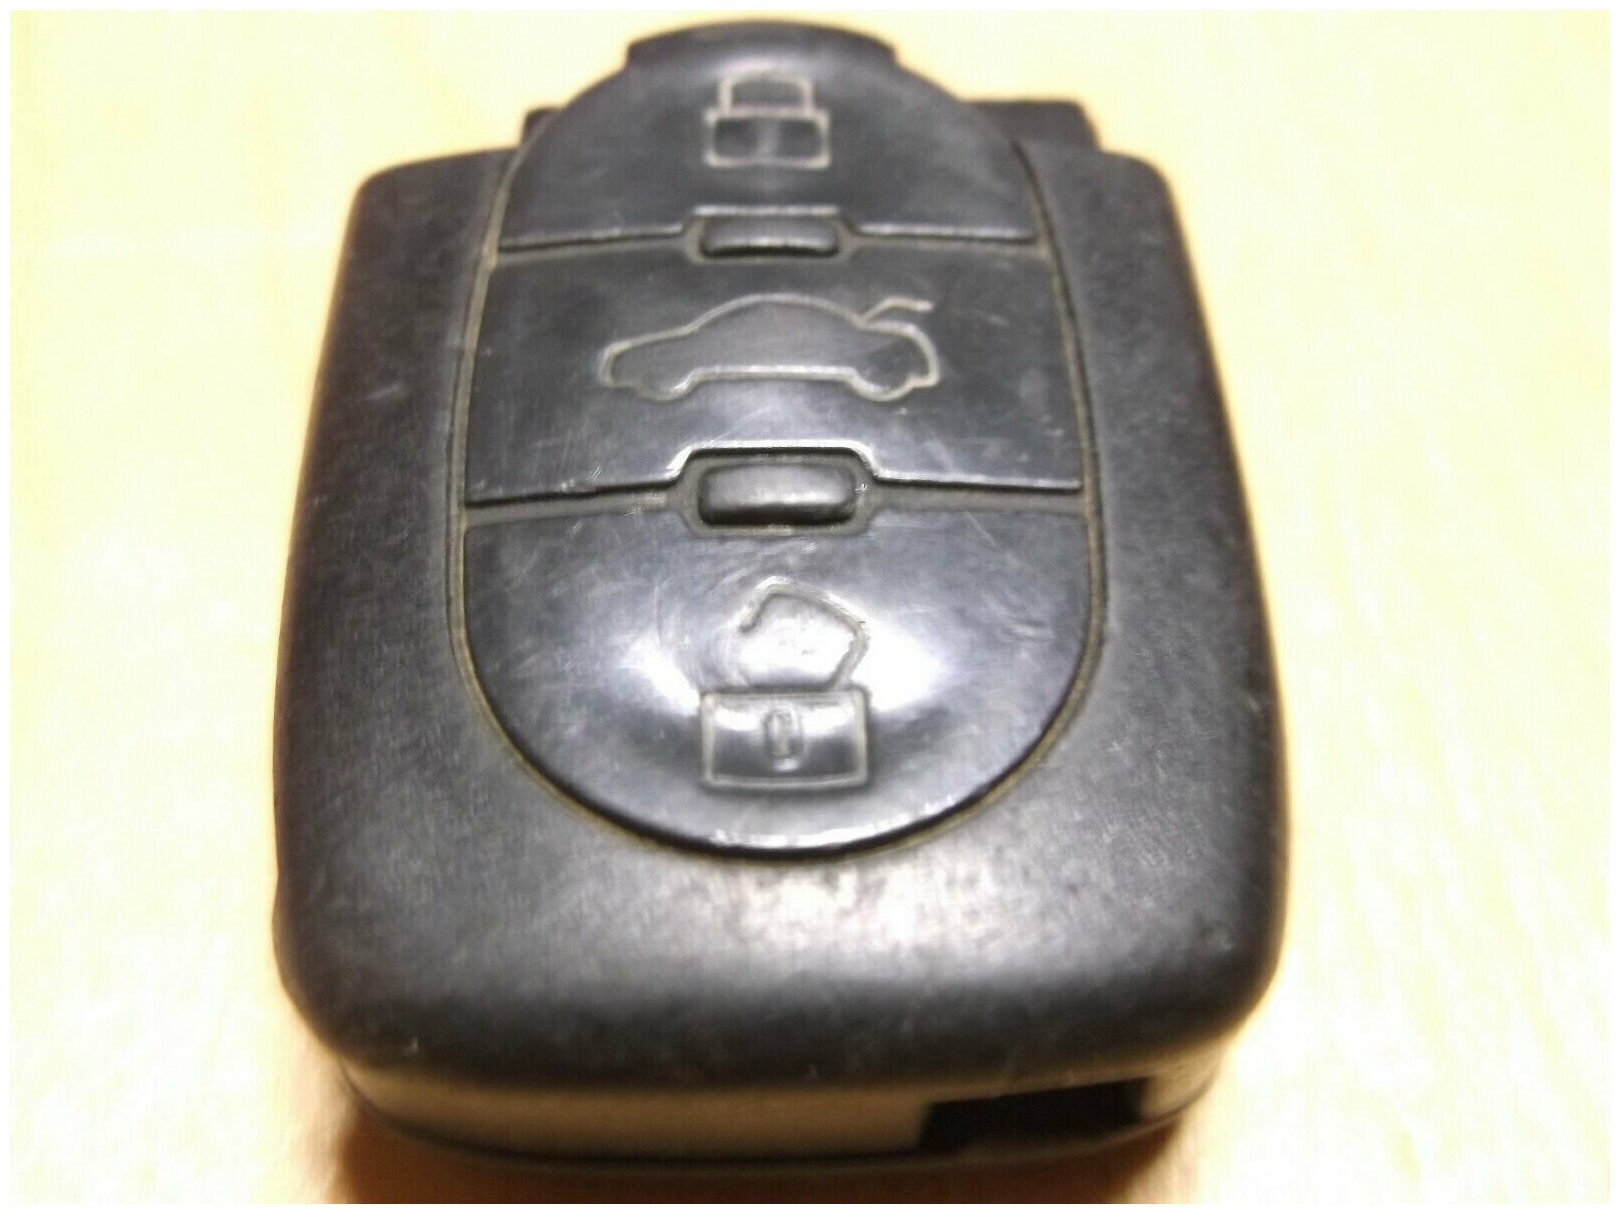 4D0 837 231 A Audi A3, A4, A6, A8, TT оригинальная кнопочная часть выкидного чип ключа 3 кнопки BAKOM 97.0515. K. P. VDO